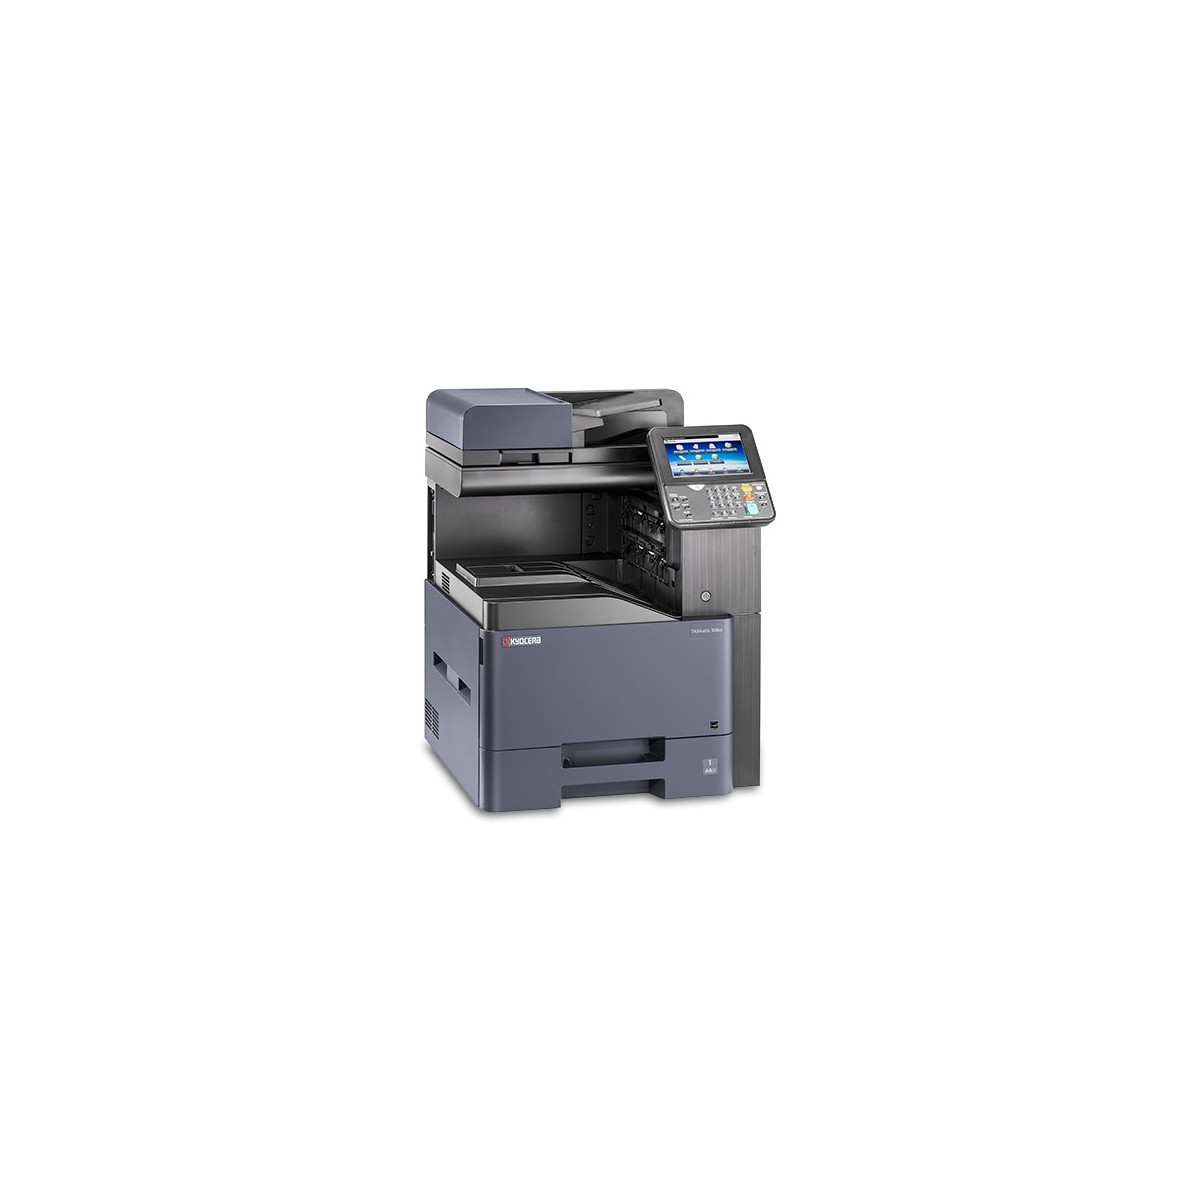 Kyocera TASKalfa 308ci FarblaserMultifunktionsgerät A4 -3in1 - Multifunction Printer - Laser-Led